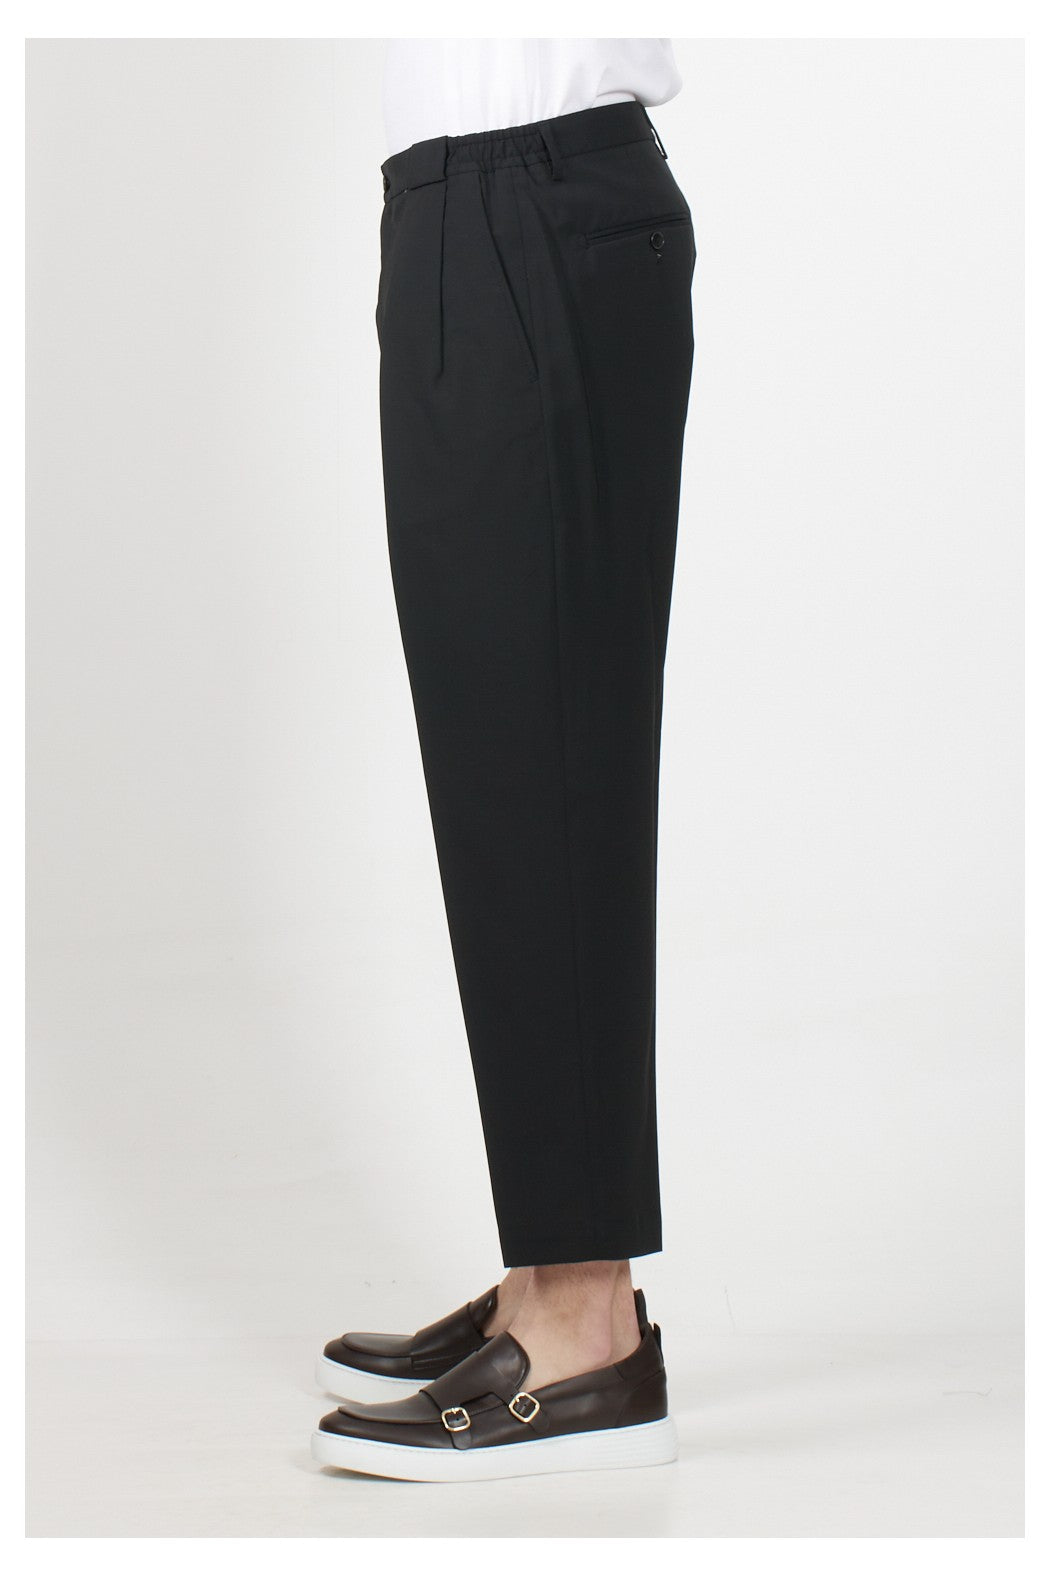 Pantalone Modello Portobello / Nero - Ideal Moda